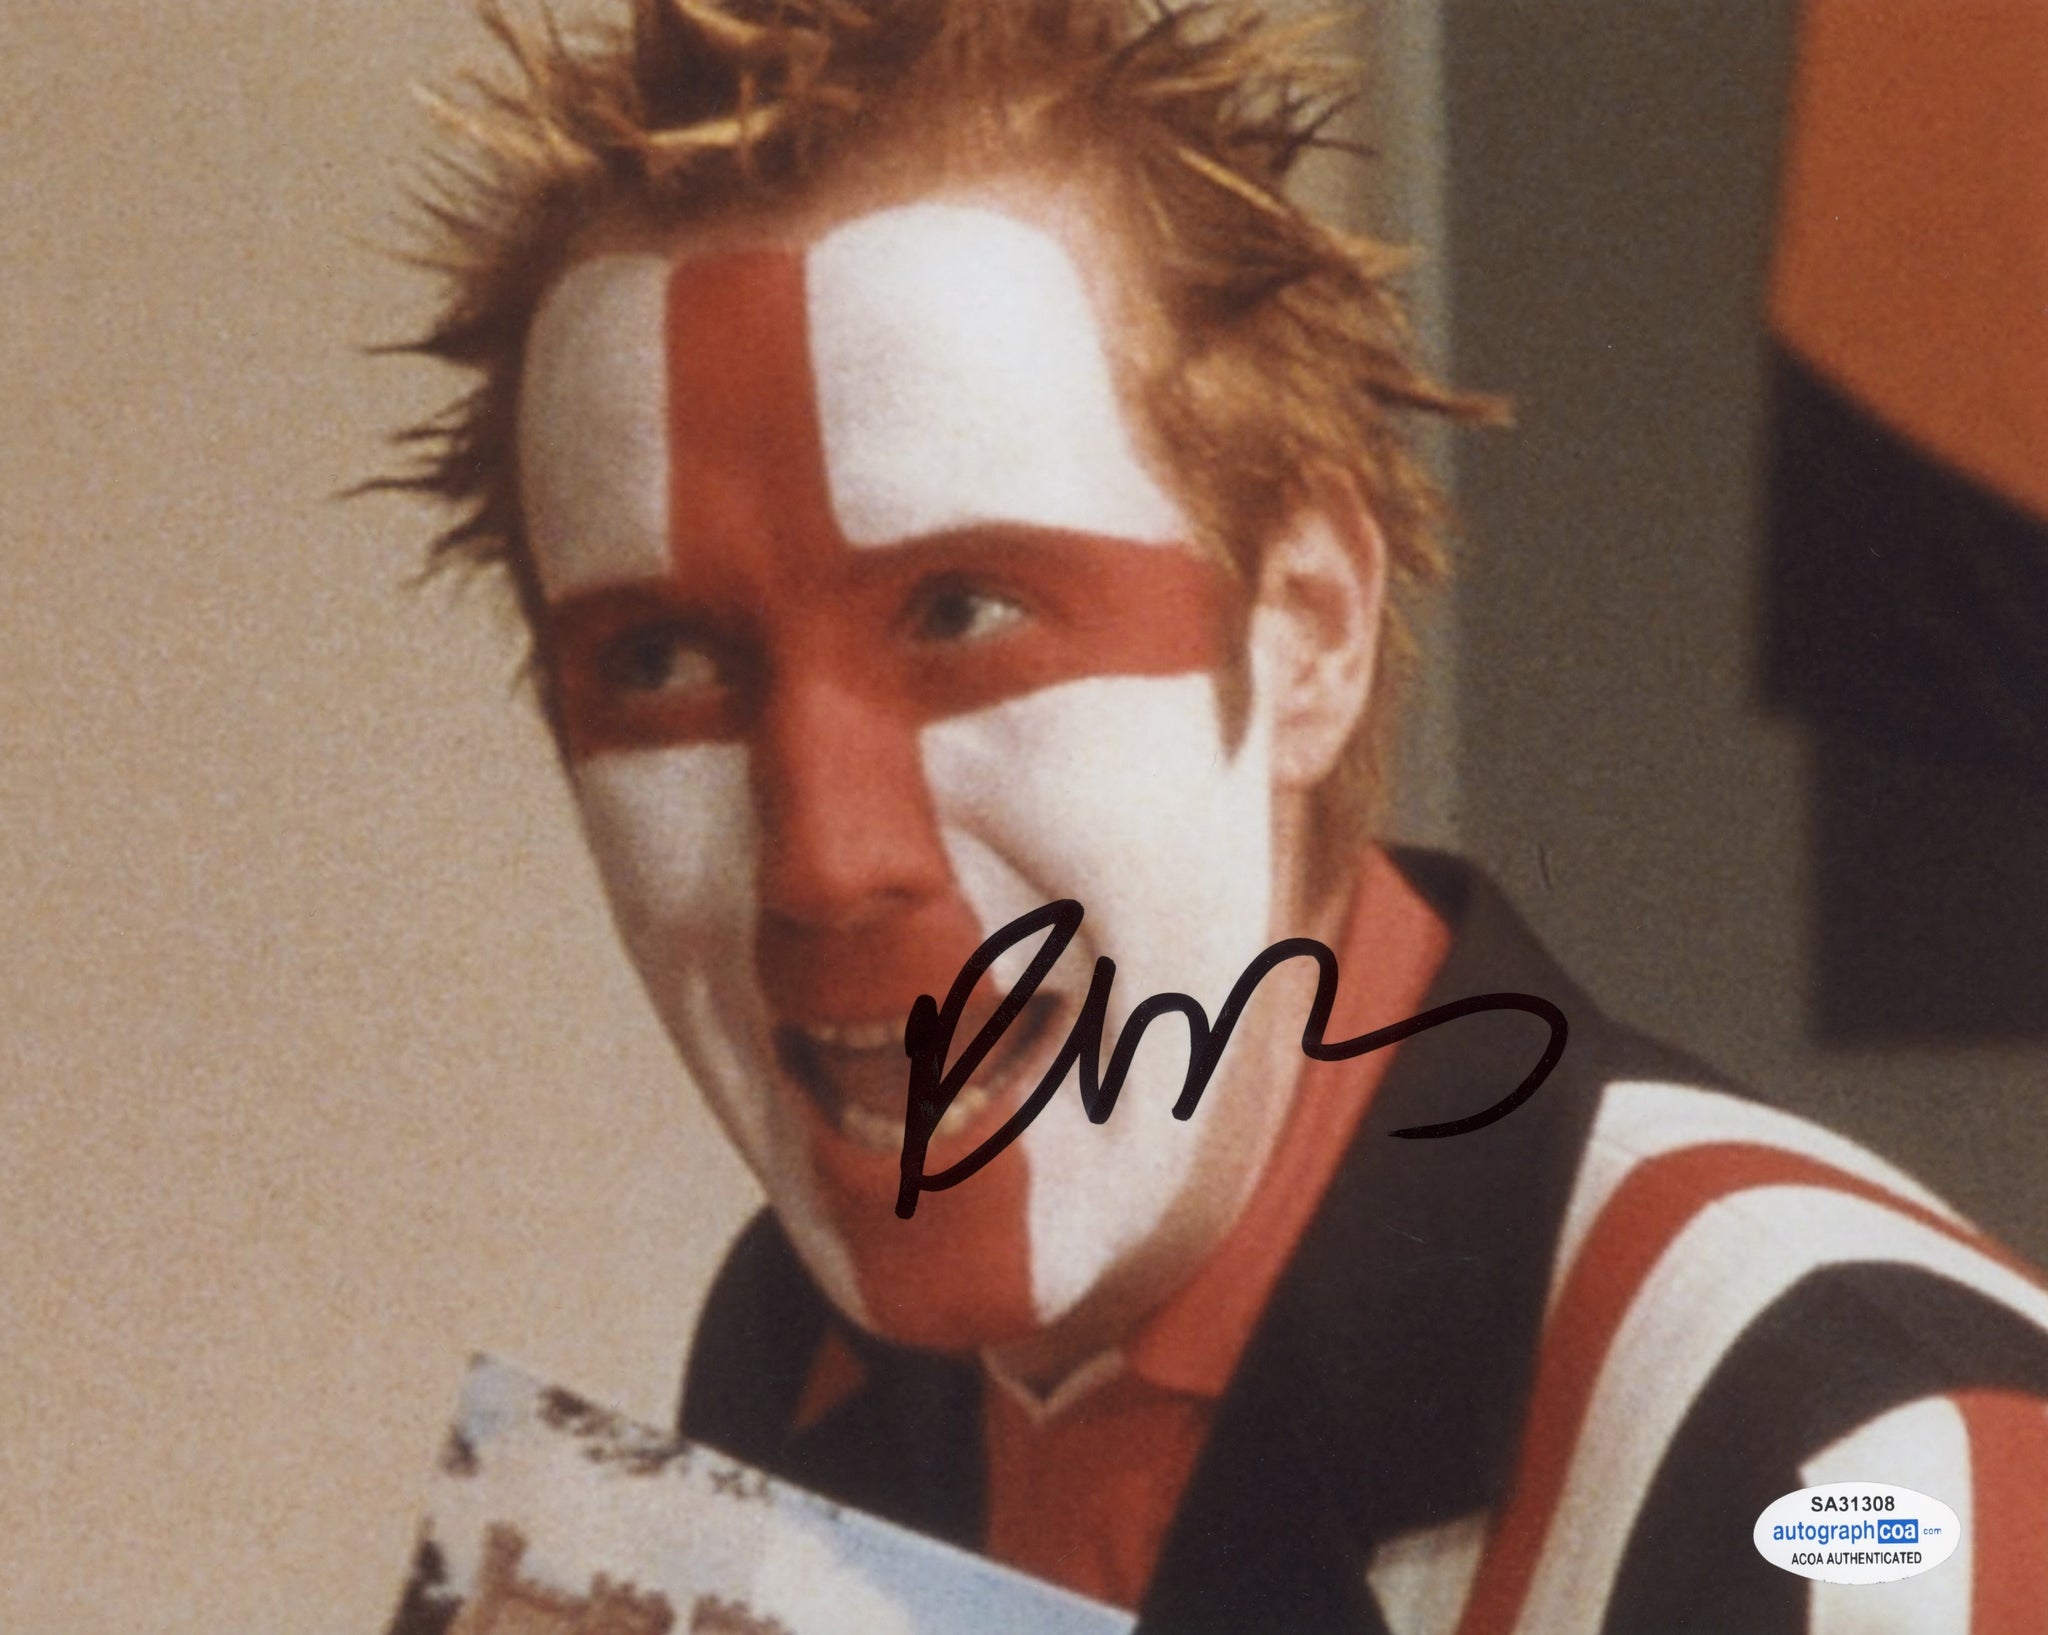 Rhys Ifans Formula 51 Signed Autograph 8x10 Photo #1 - Outlaw Hobbies Authentic Autographs